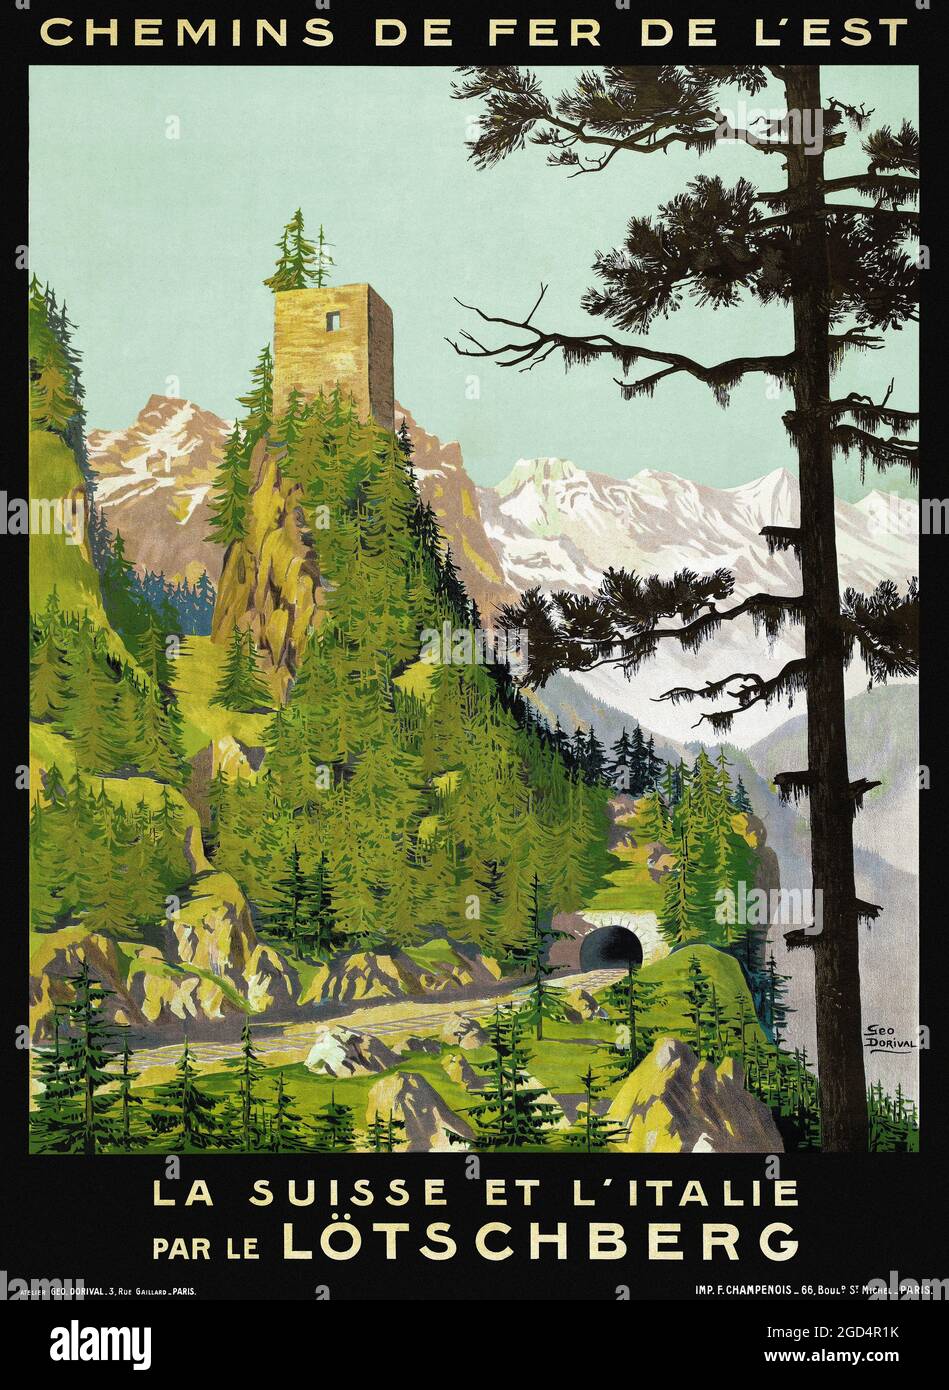 Chemins de fer de l'est. La Suisse et l'Italie par le Lötschberg par Geo Dorival (1879-1968). Affiche ancienne restaurée publiée en 1910 en Suisse. Banque D'Images